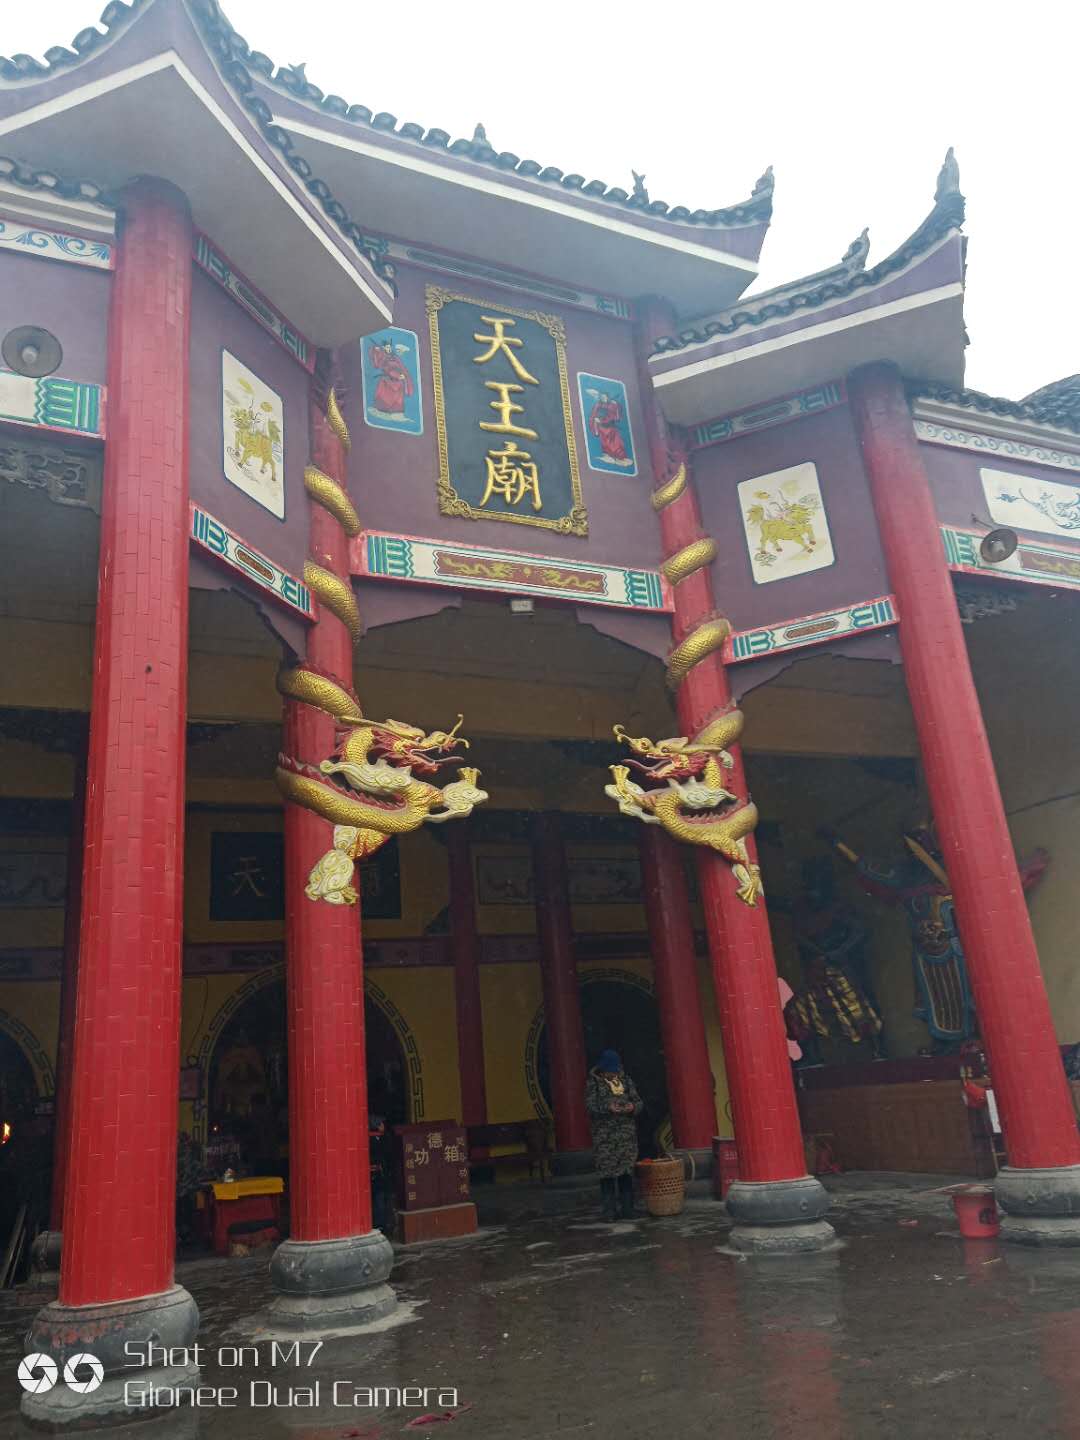 原创"高山旗手"告诉您湘西吉首附近的这座《天王庙》寺庙富丽堂皇背后